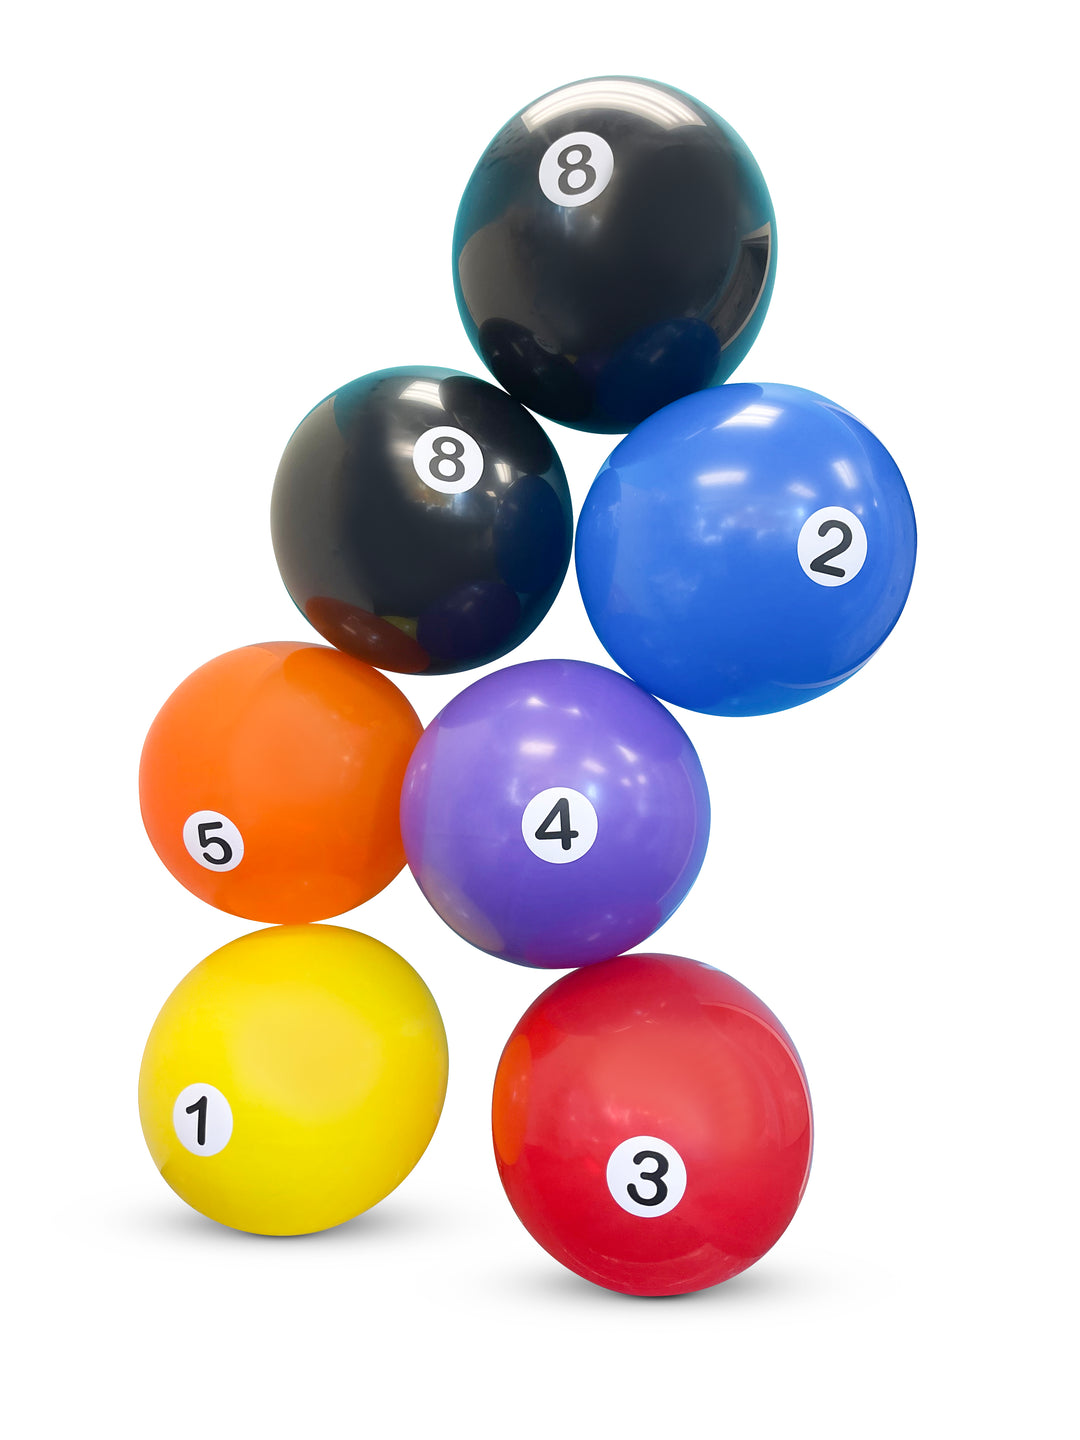 24" Billiard balloon balls QTY 1